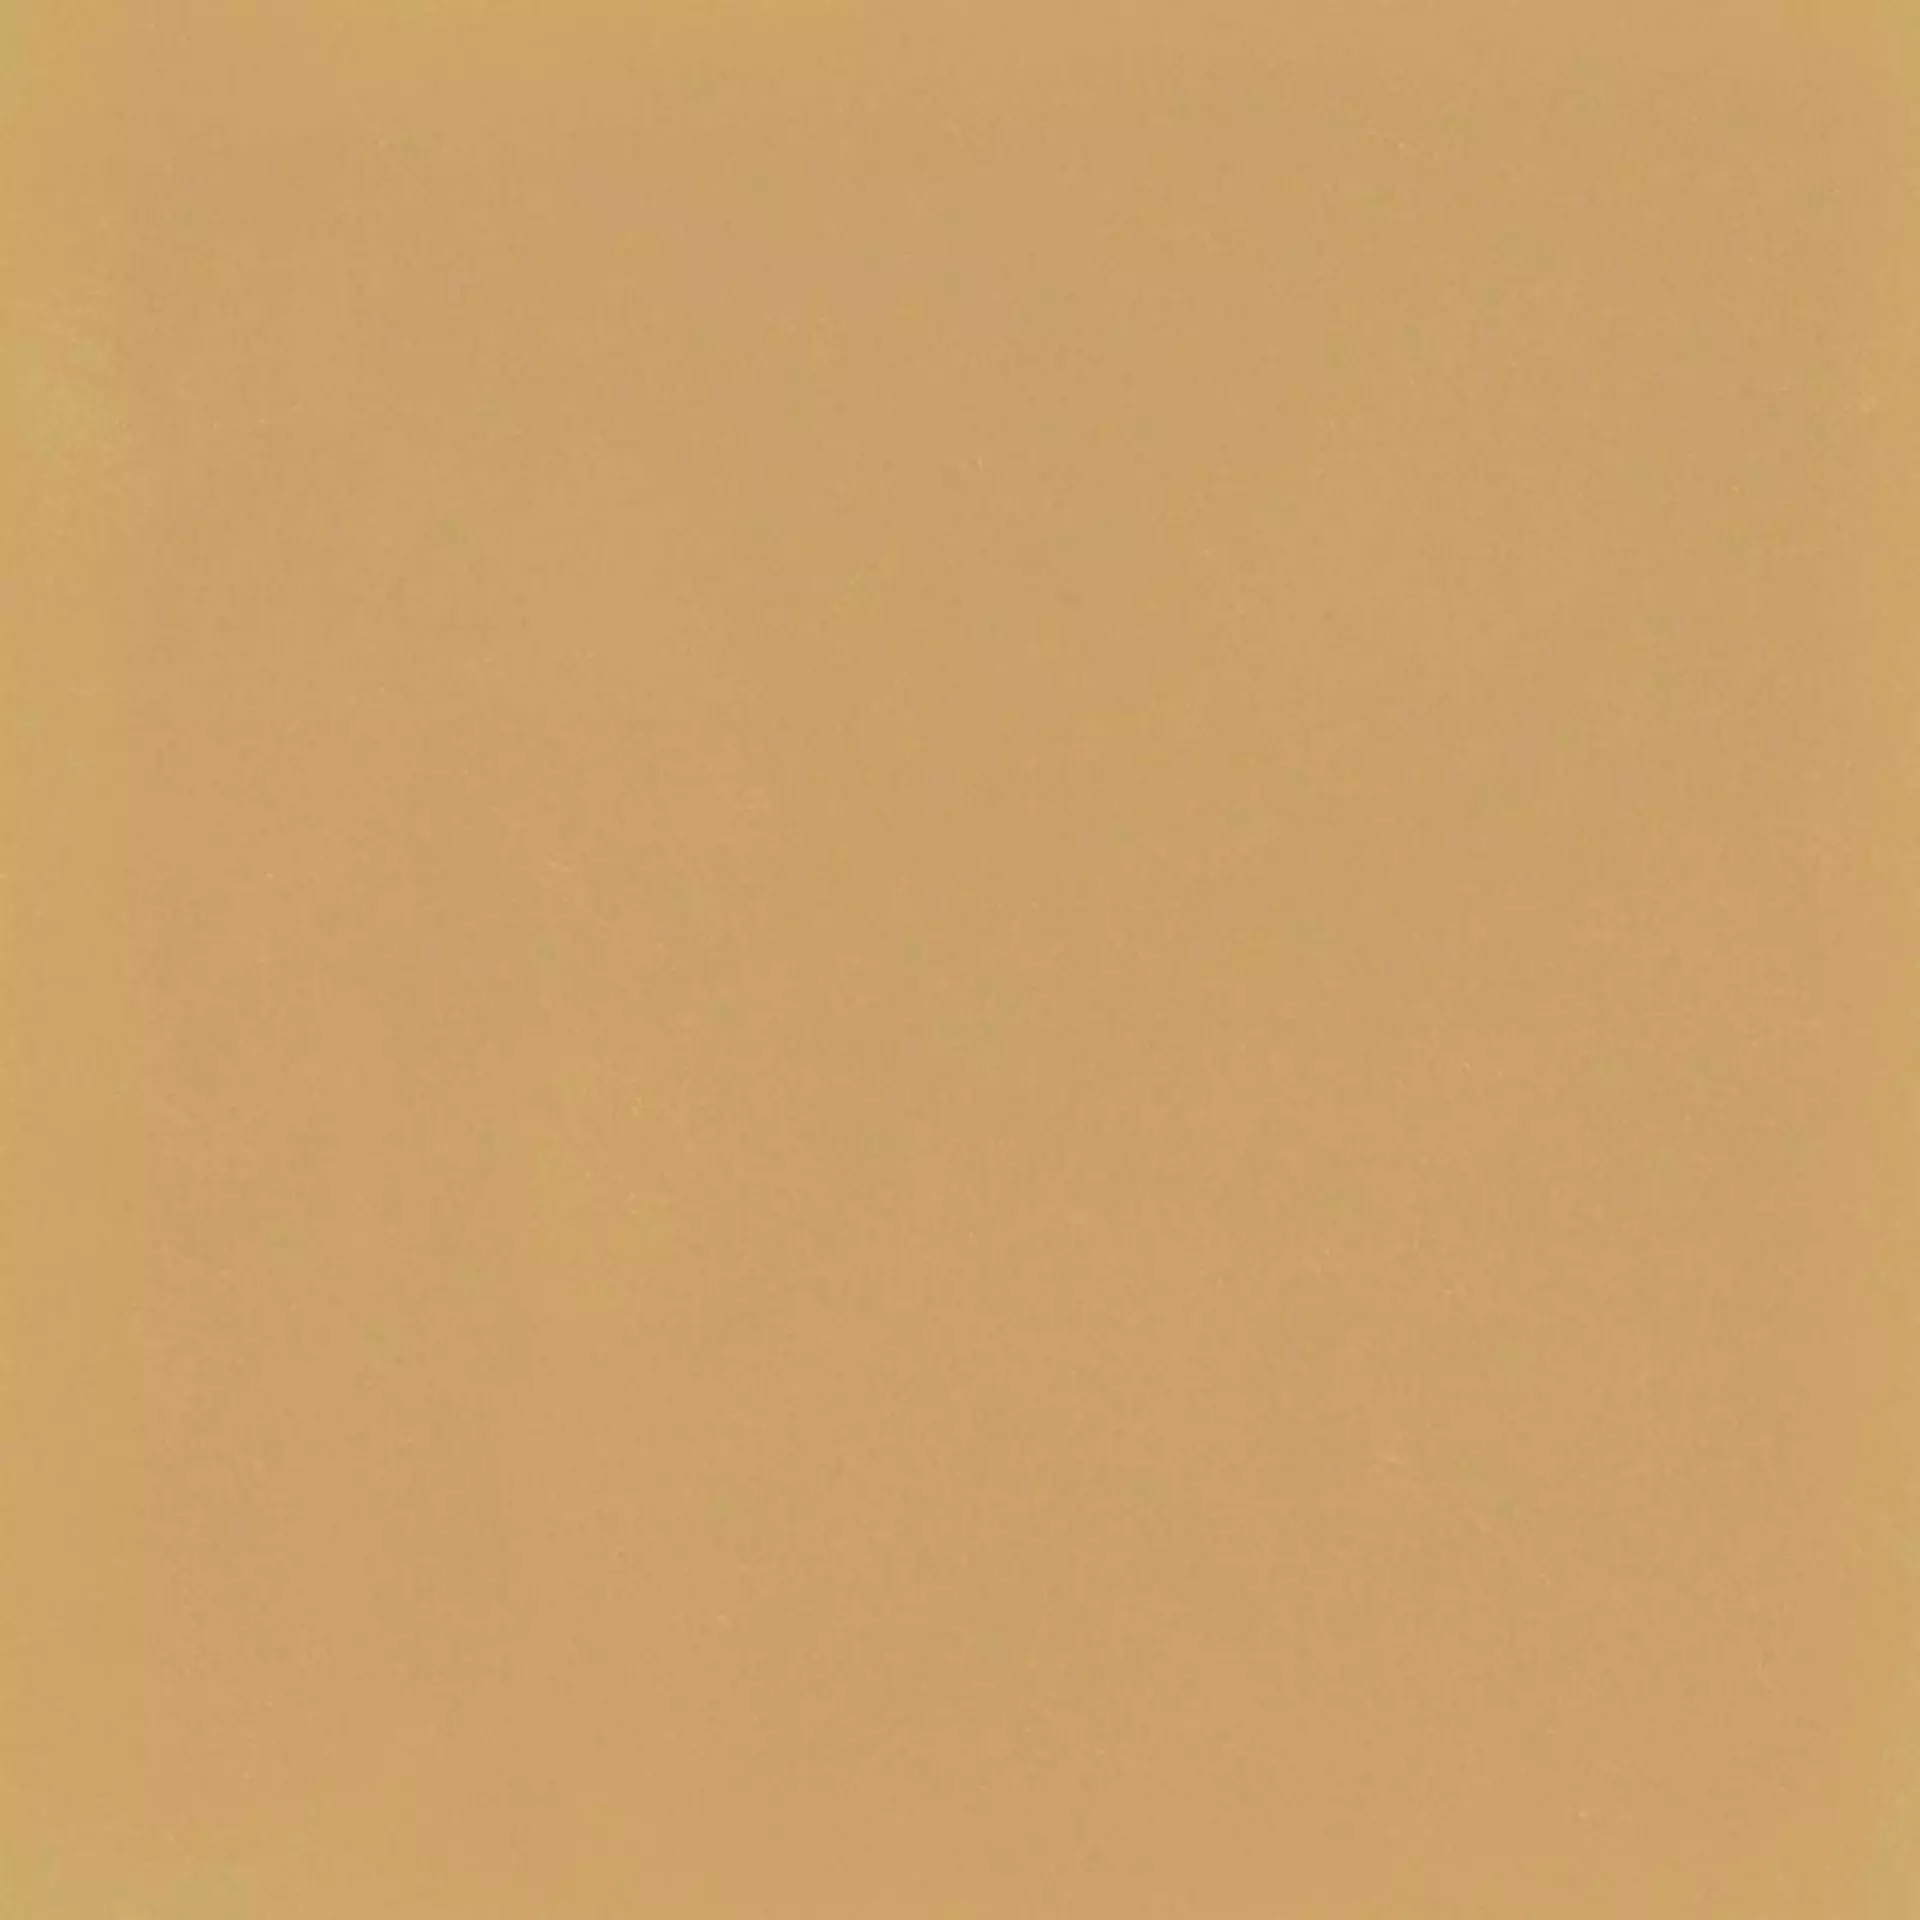 Bodenfliese,Wandfliese Marazzi Dsegni Colore Mustard Naturale – Matt Mustard M1KT matt natur 20x20cm 10mm